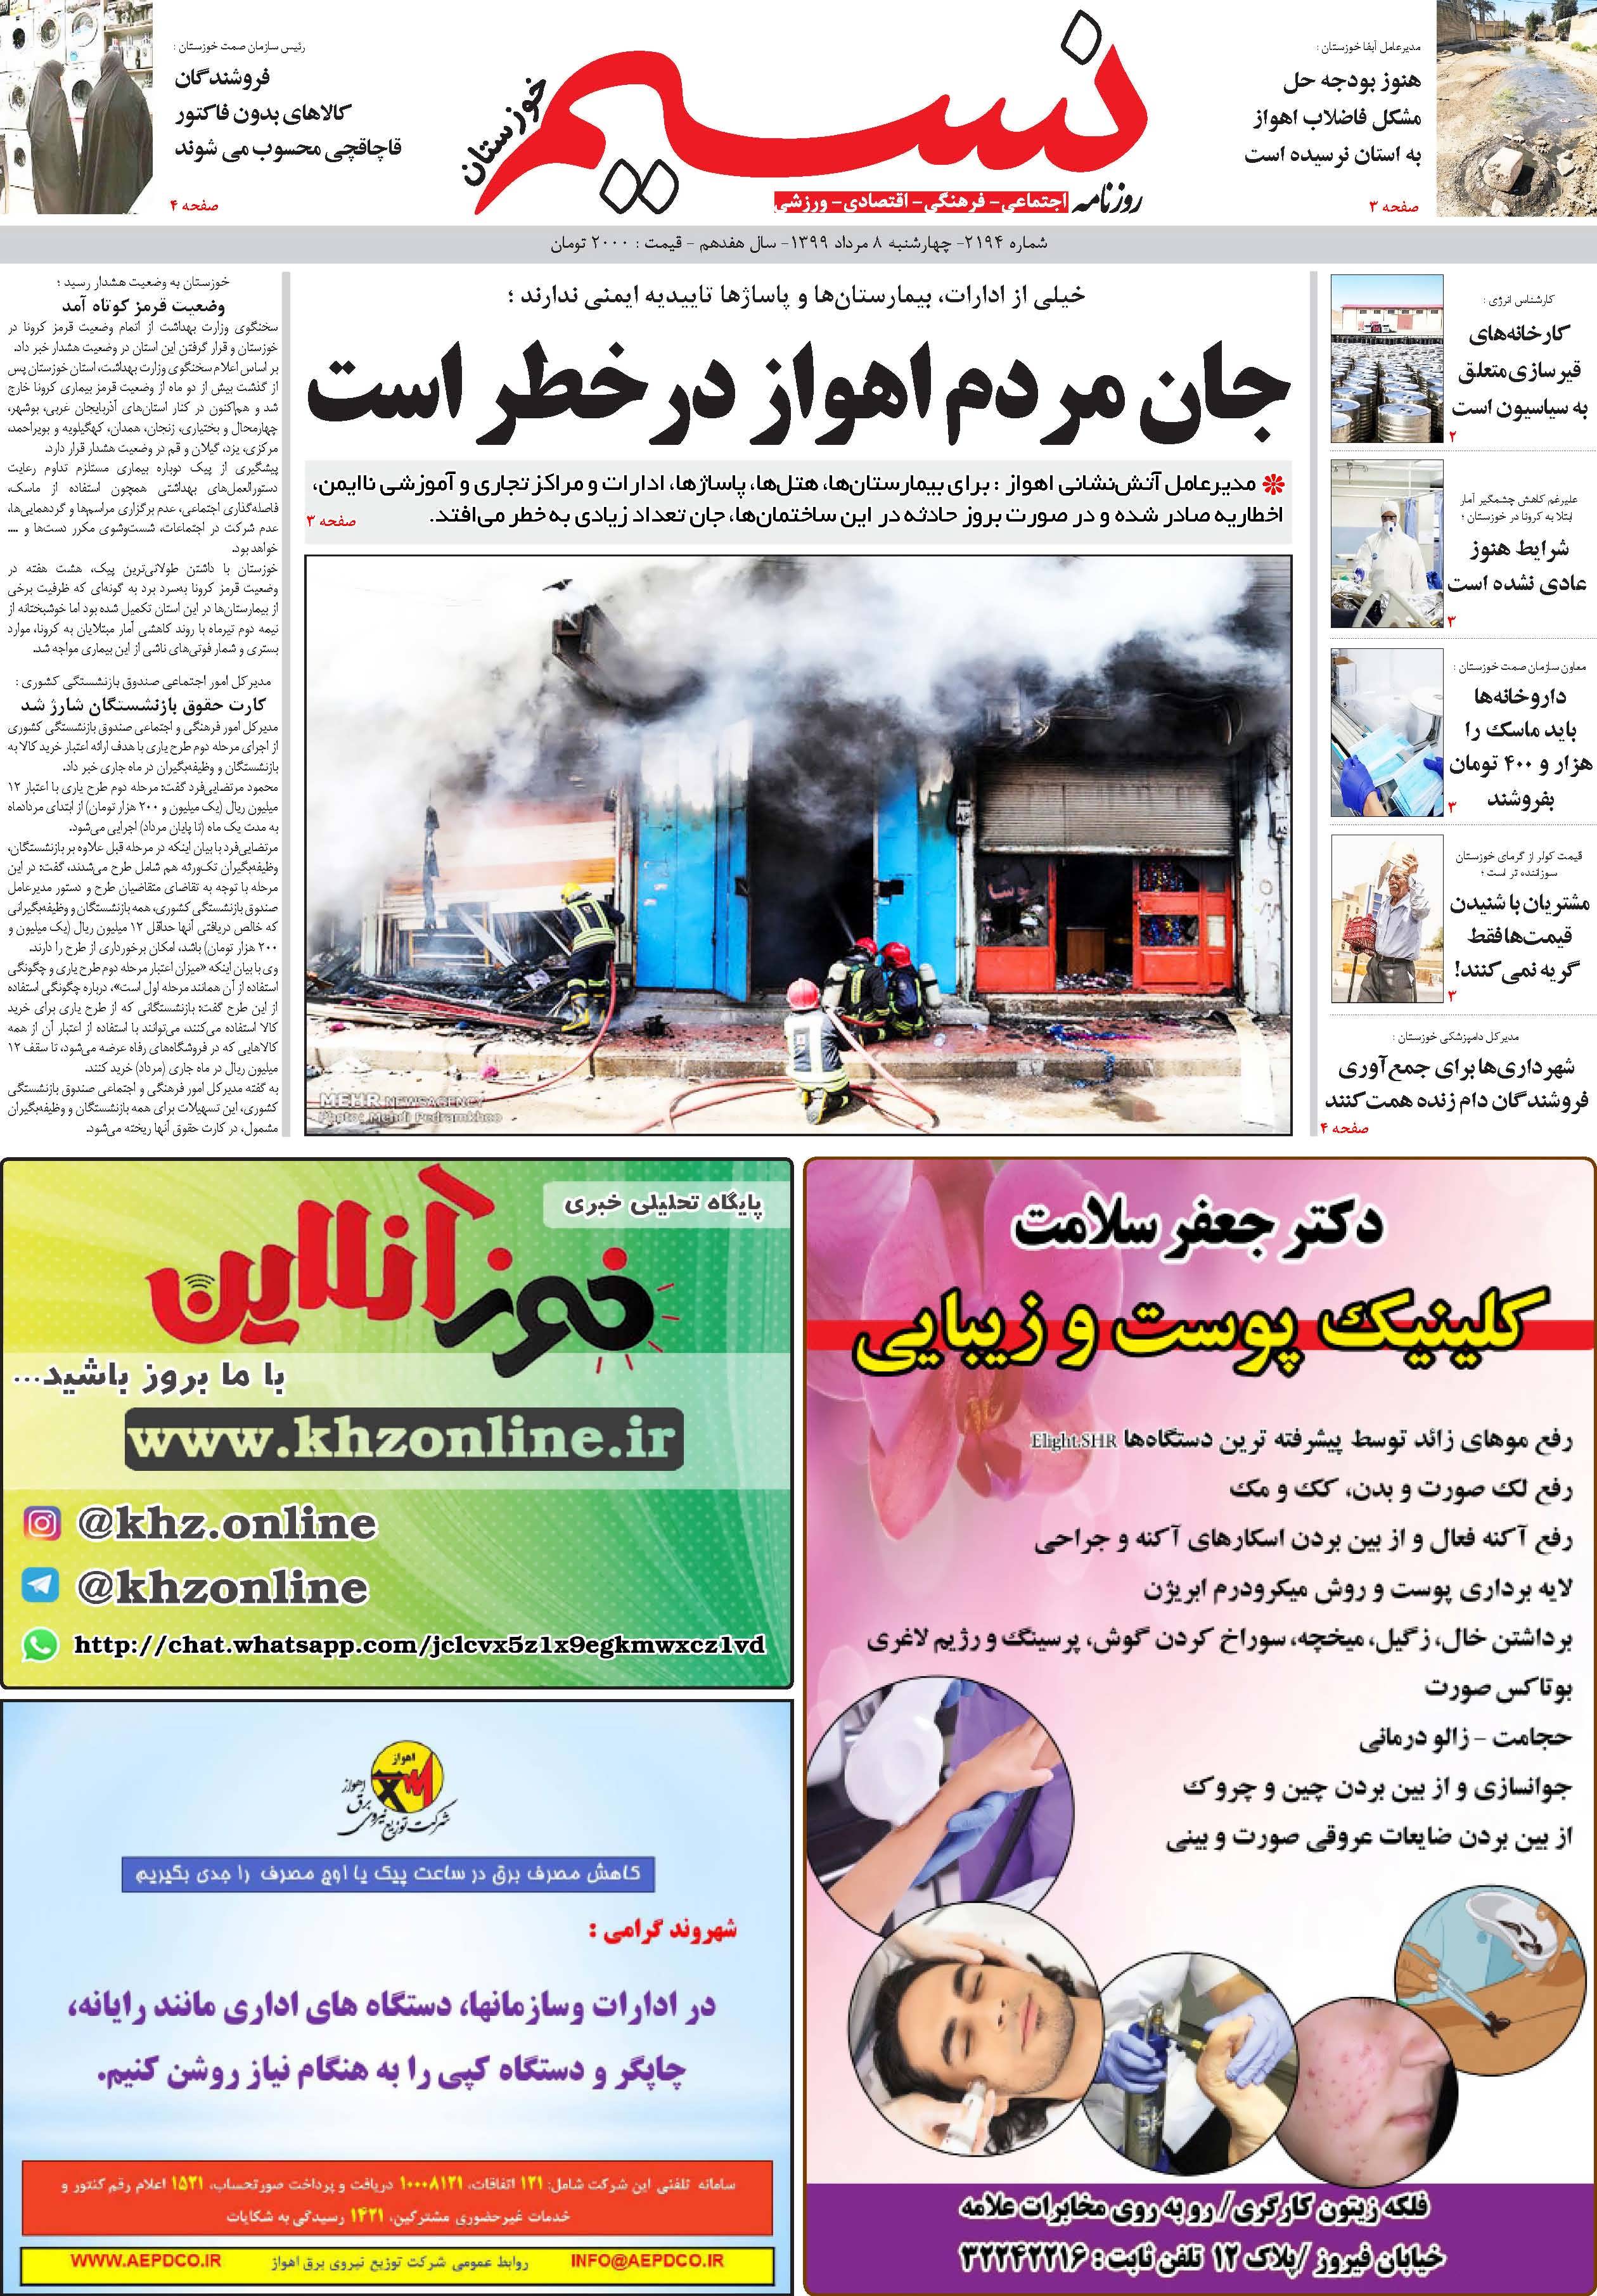 صفحه اصلی روزنامه نسیم شماره 2194 